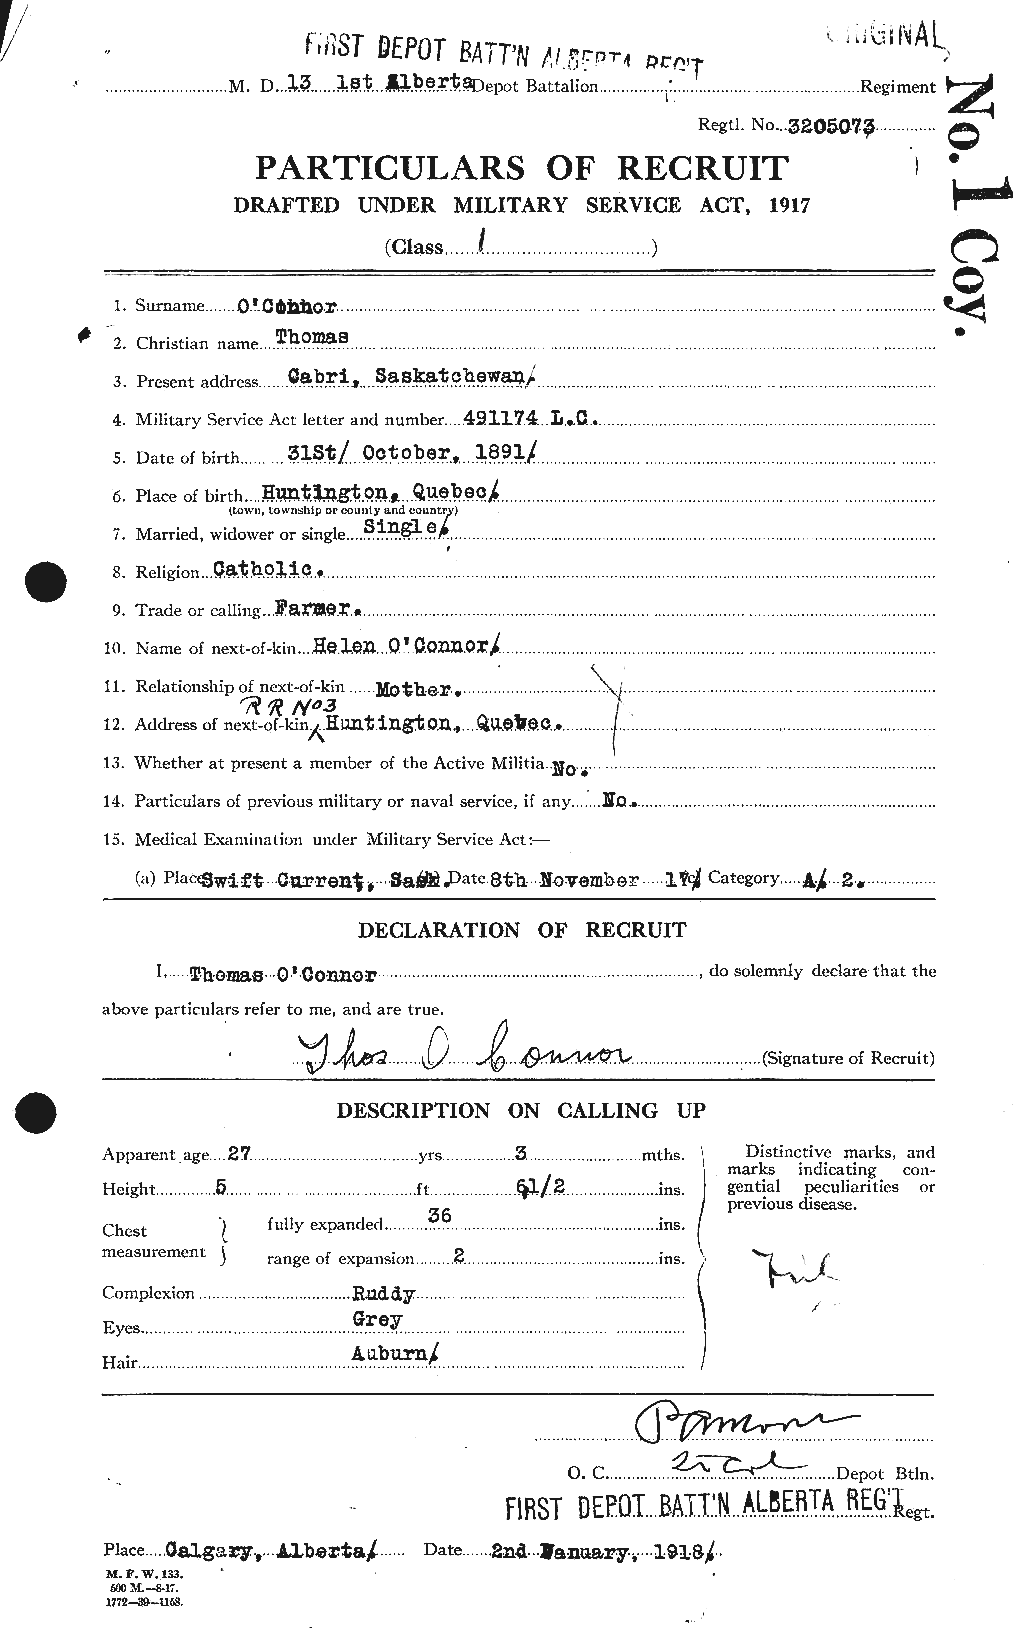 Dossiers du Personnel de la Première Guerre mondiale - CEC 553963a